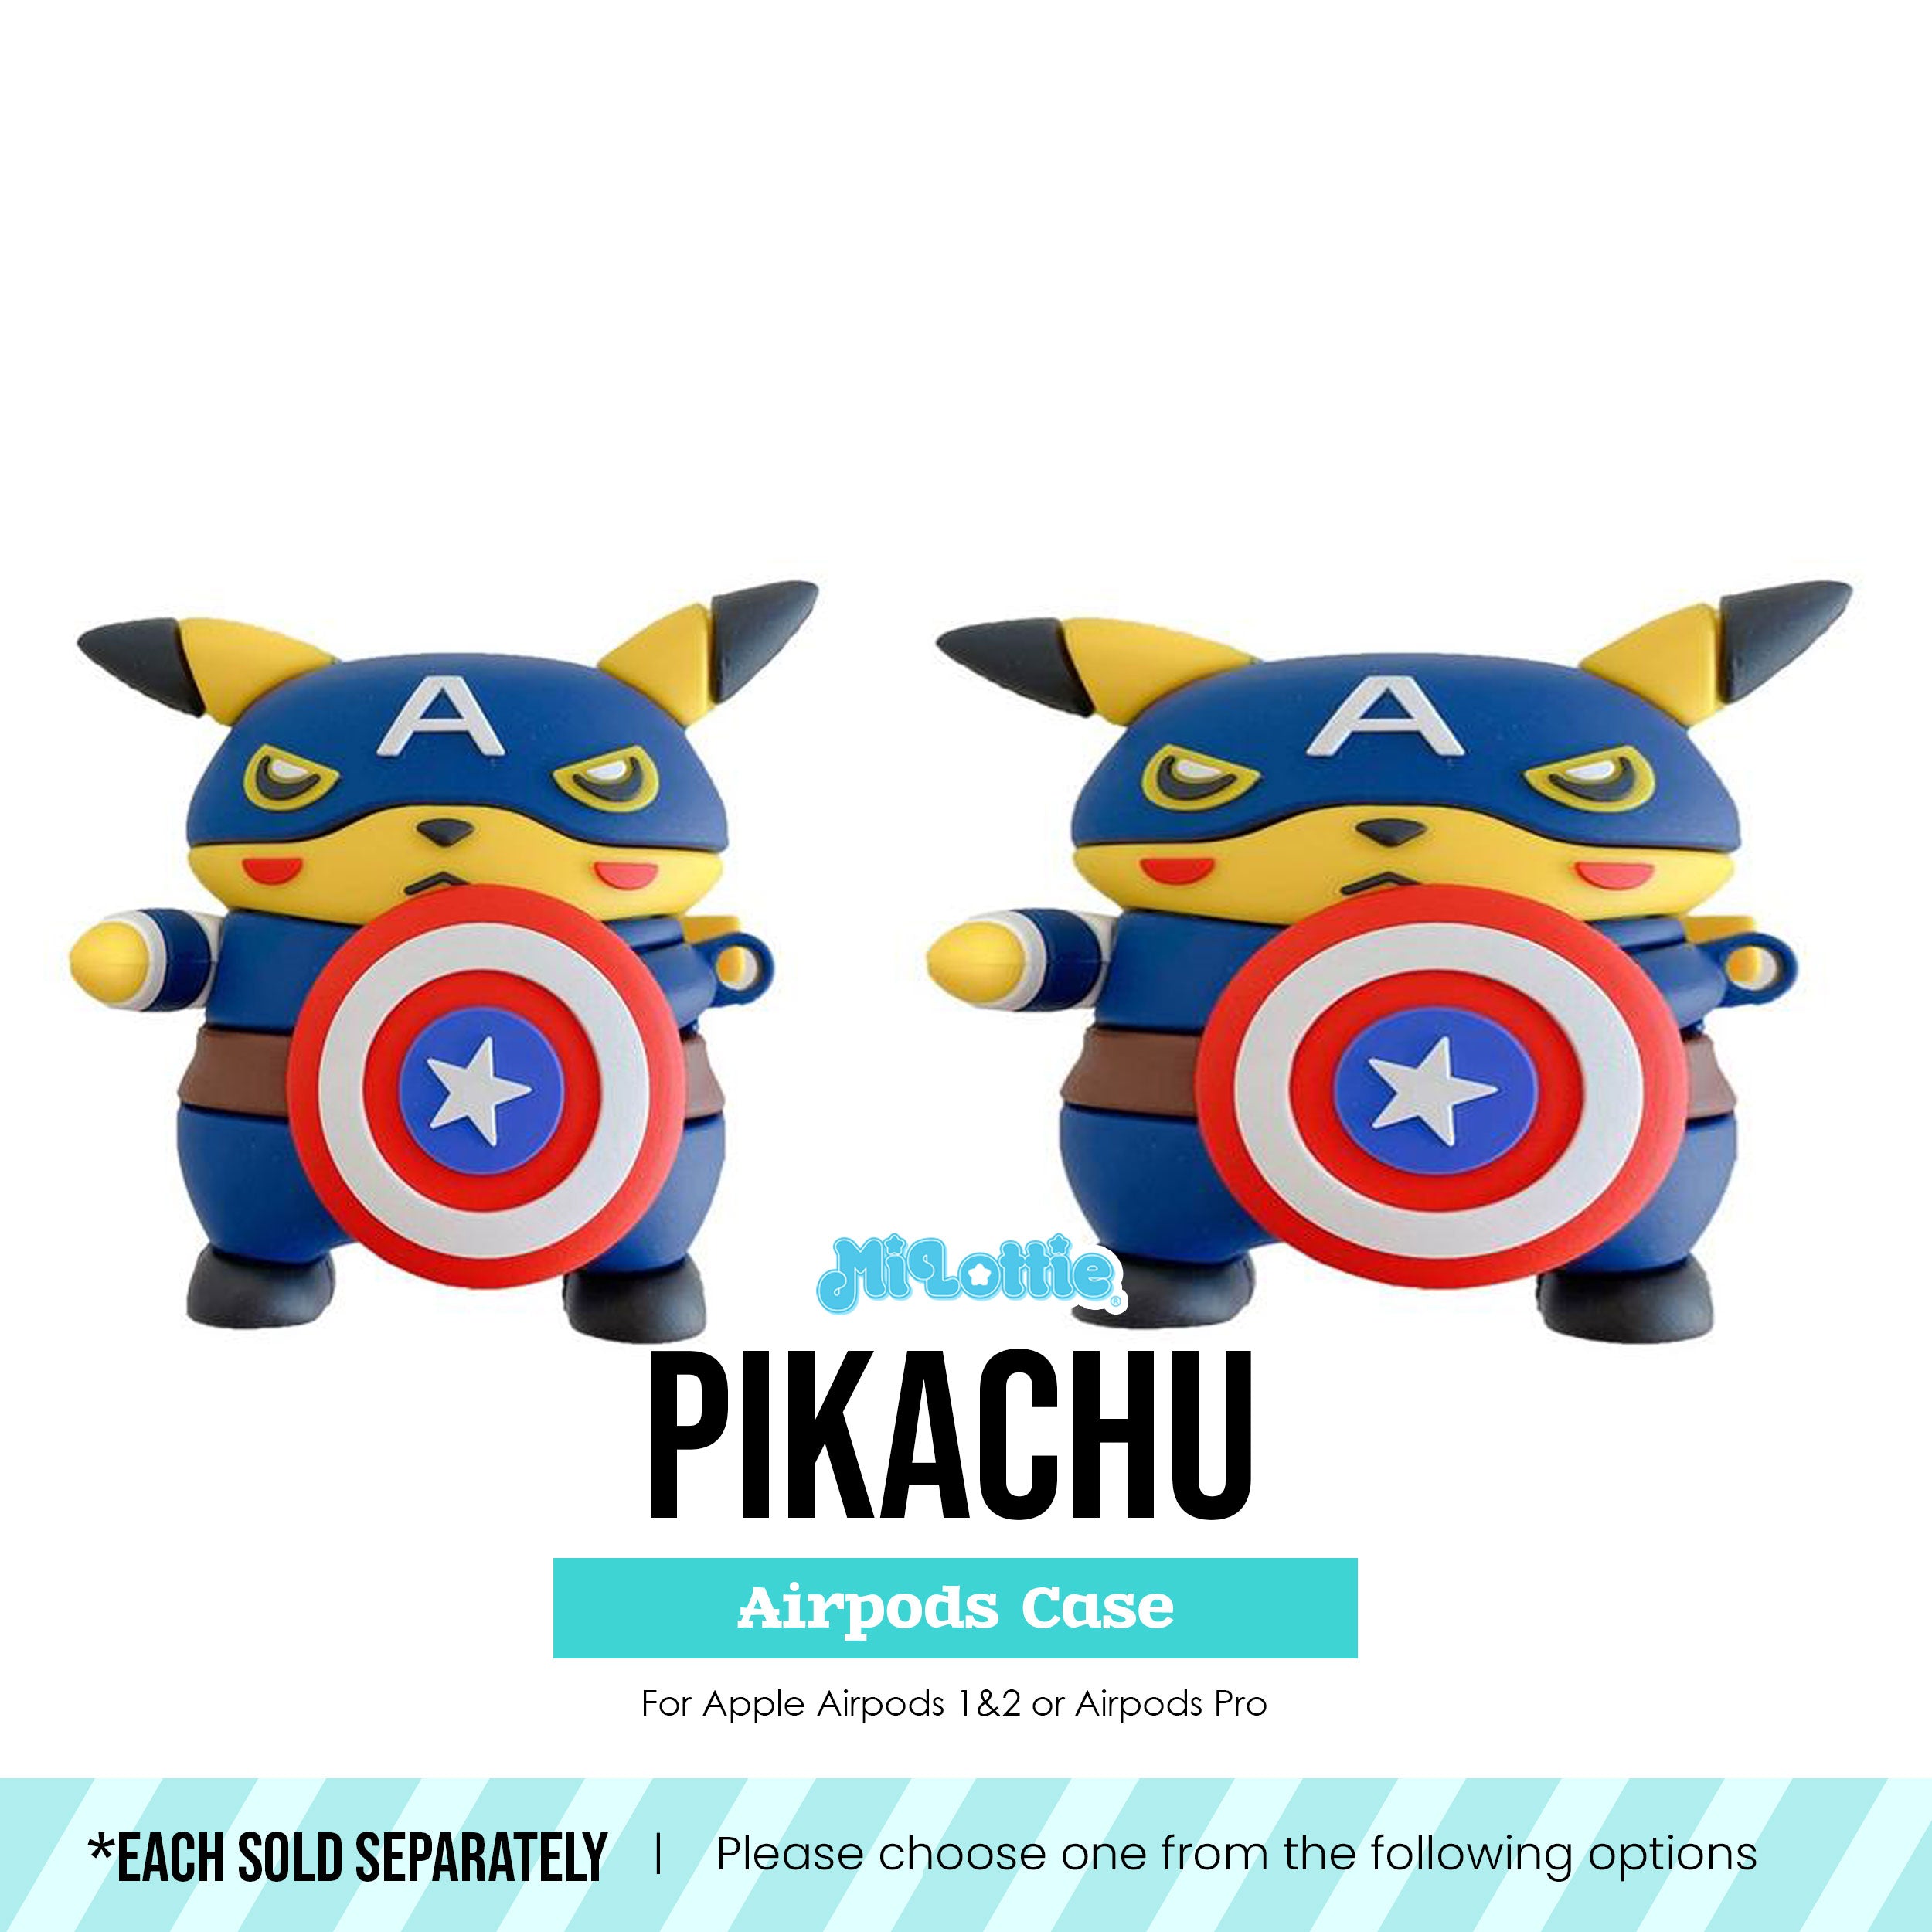 Pikachu in Captain America Costume Pokemon Airpods Case - 0